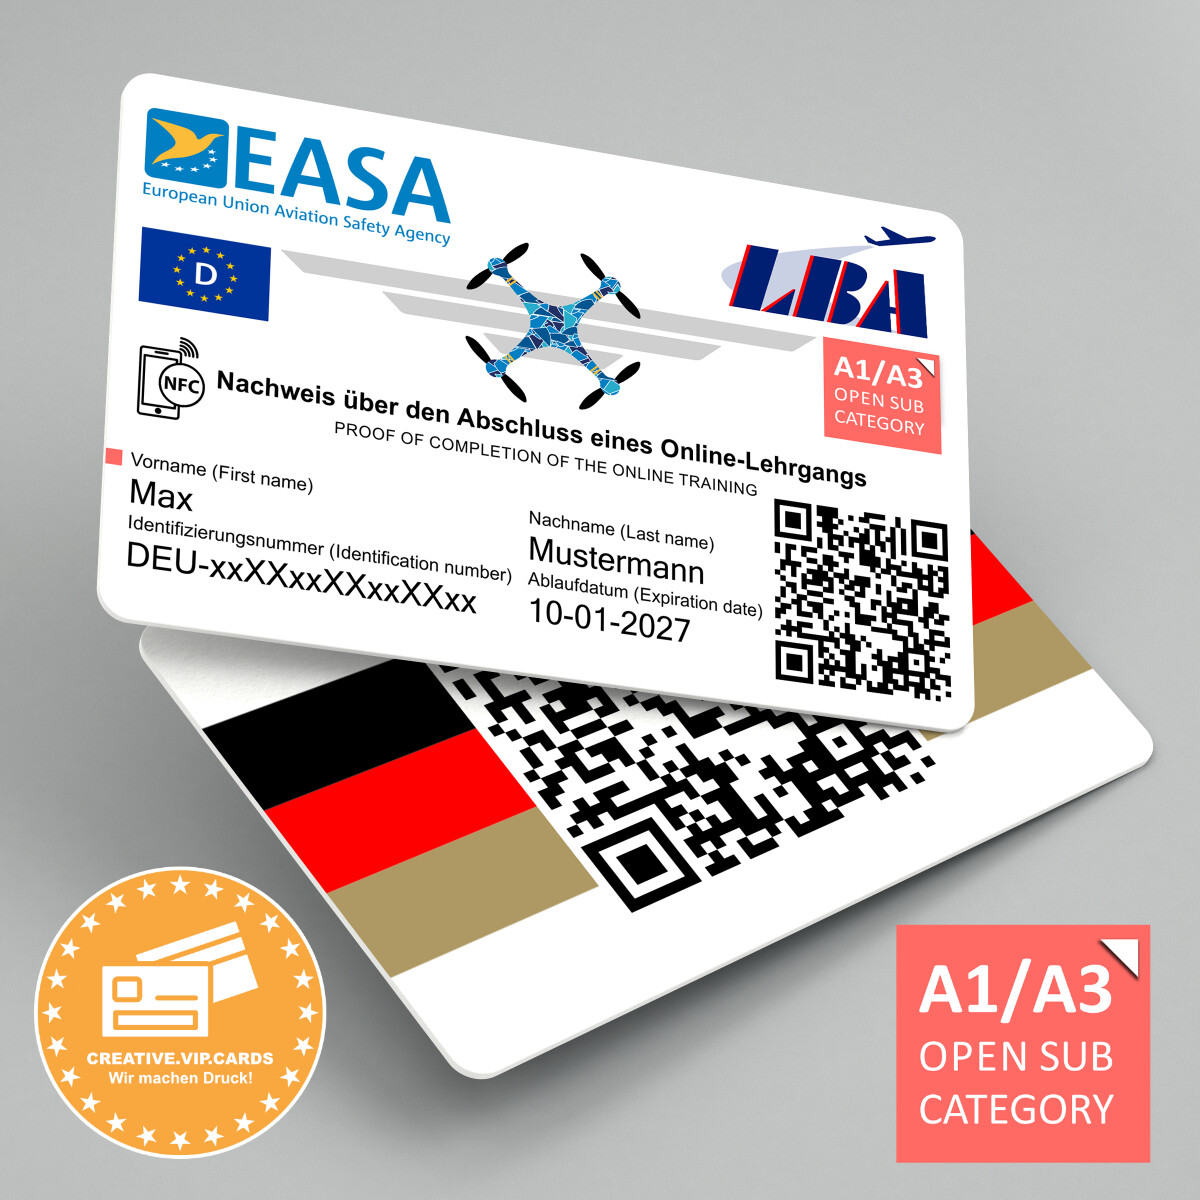 EU - Drohnenführerschein A1/A3 auf eine NFC - Plastikkarte im Kreditkartenformat drucken lassen